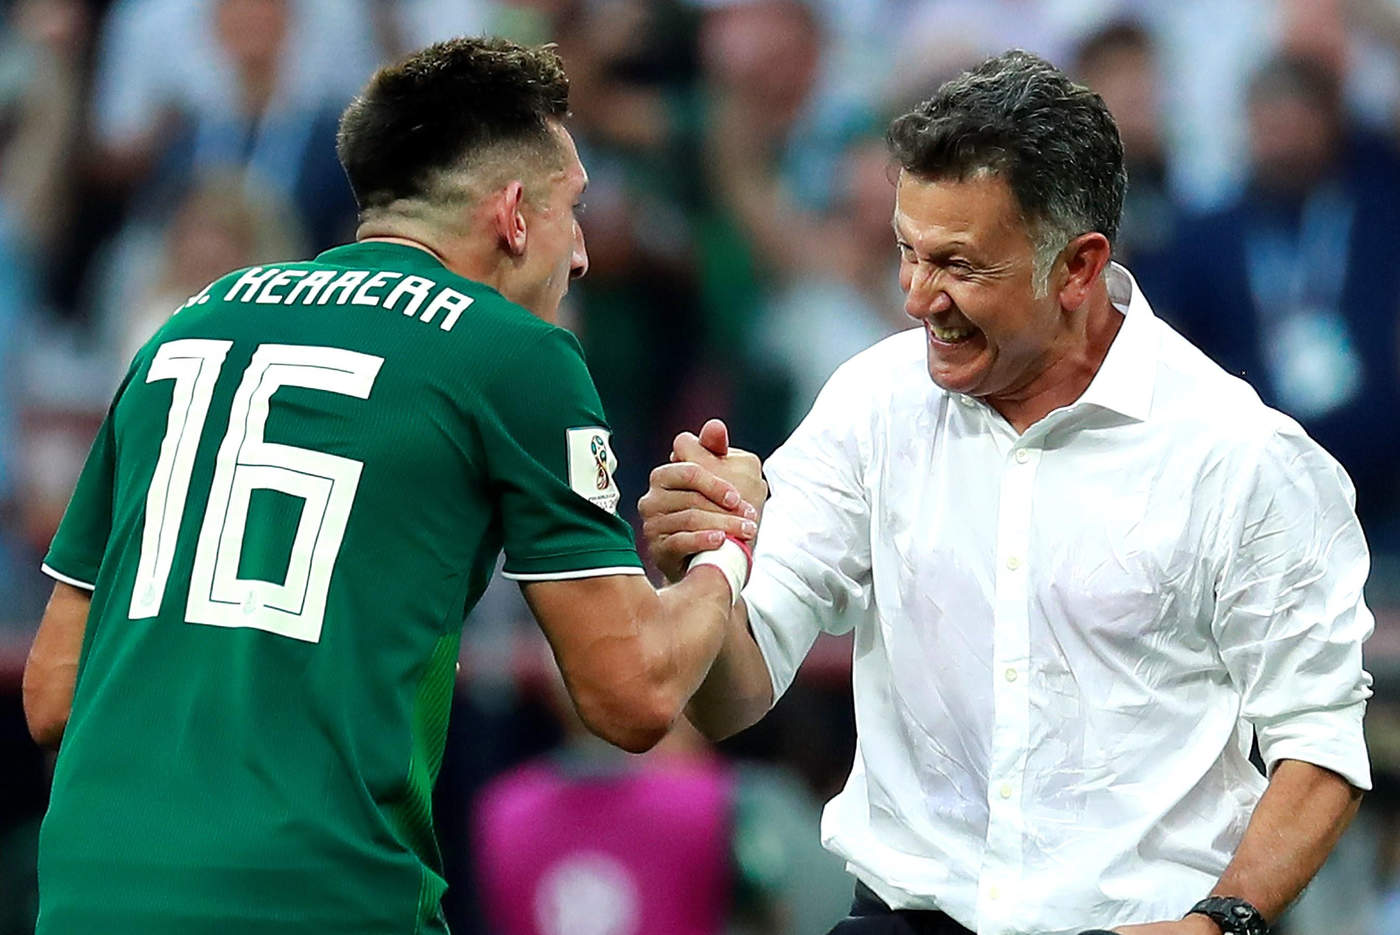 Esta será la primera vez que Juan Carlos Osorio se vea las caras contra el Tricolor, luego de su salida tras el Mundial de Rusia 2018.